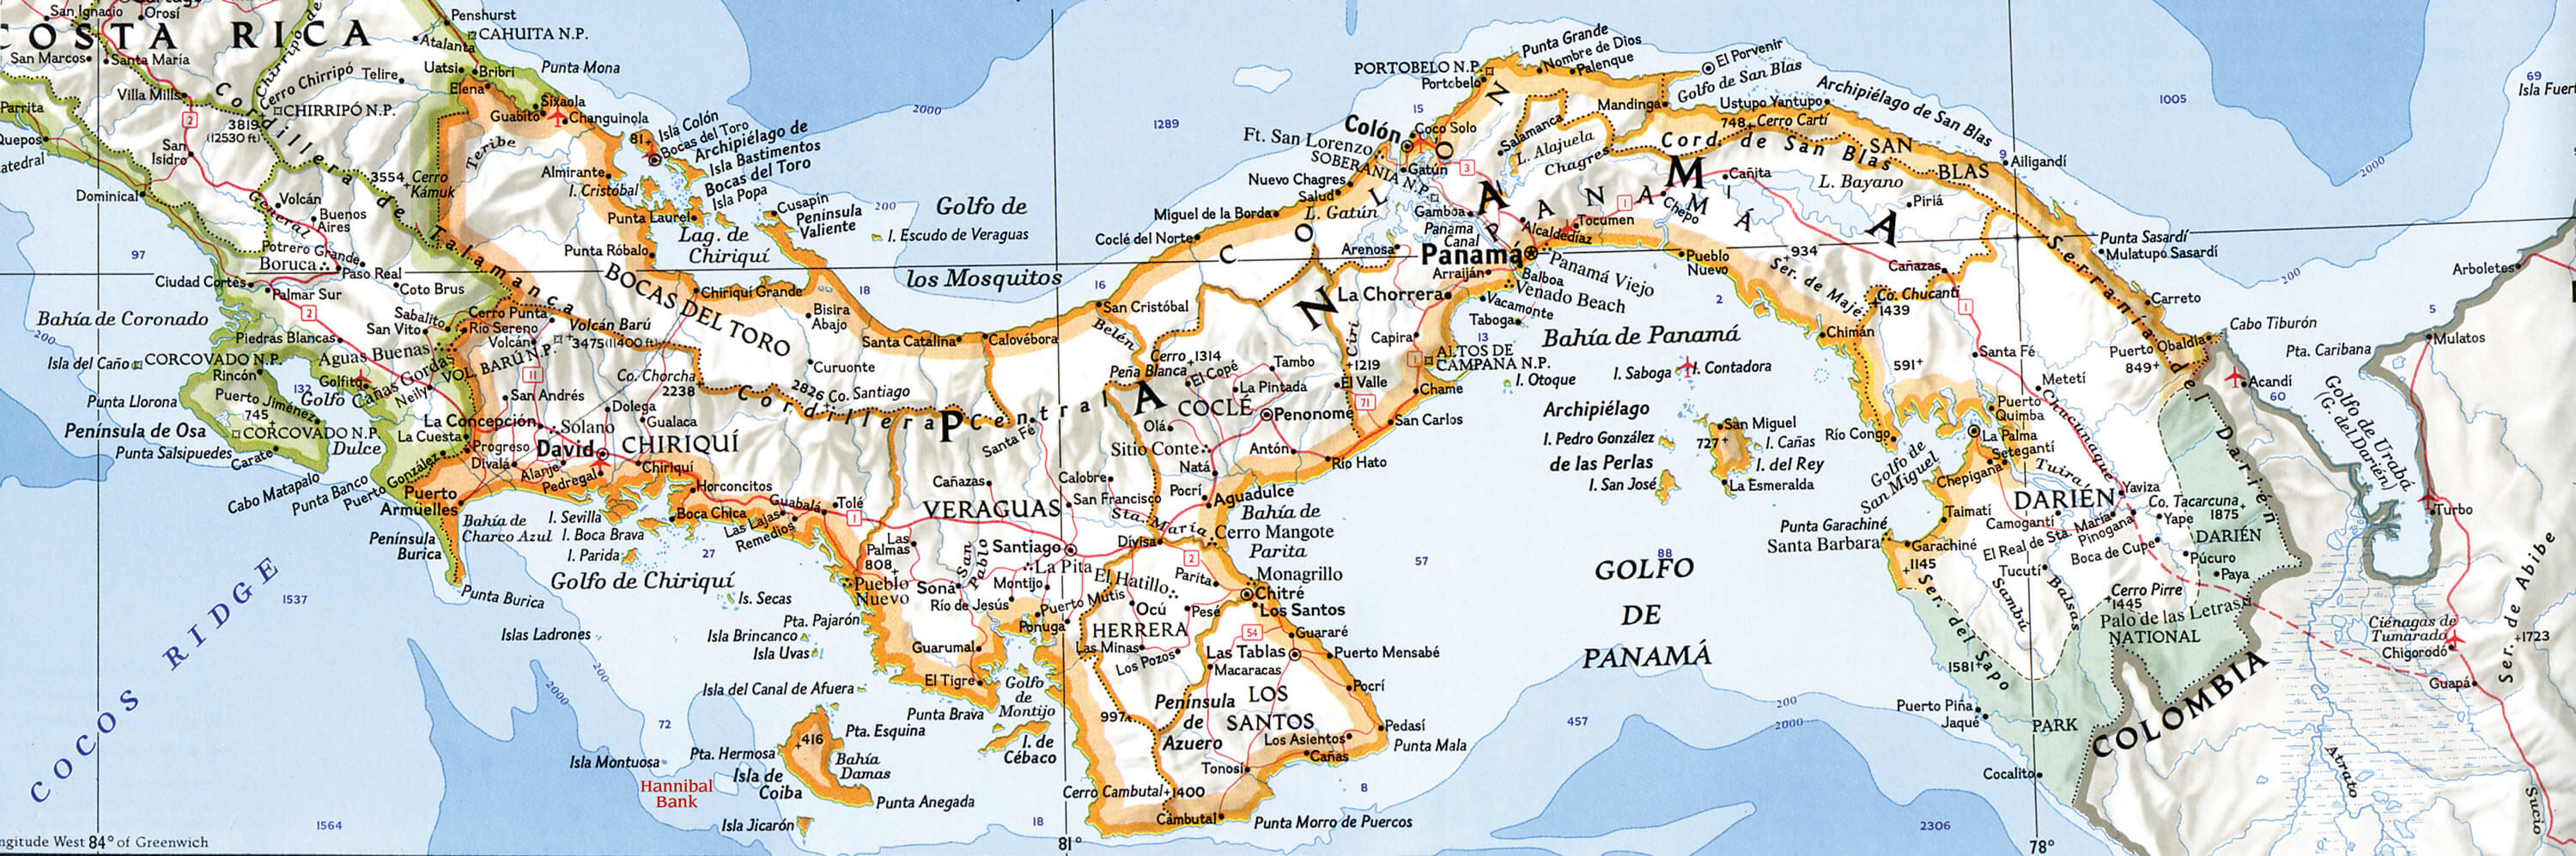 physikalisch karte von panama towns